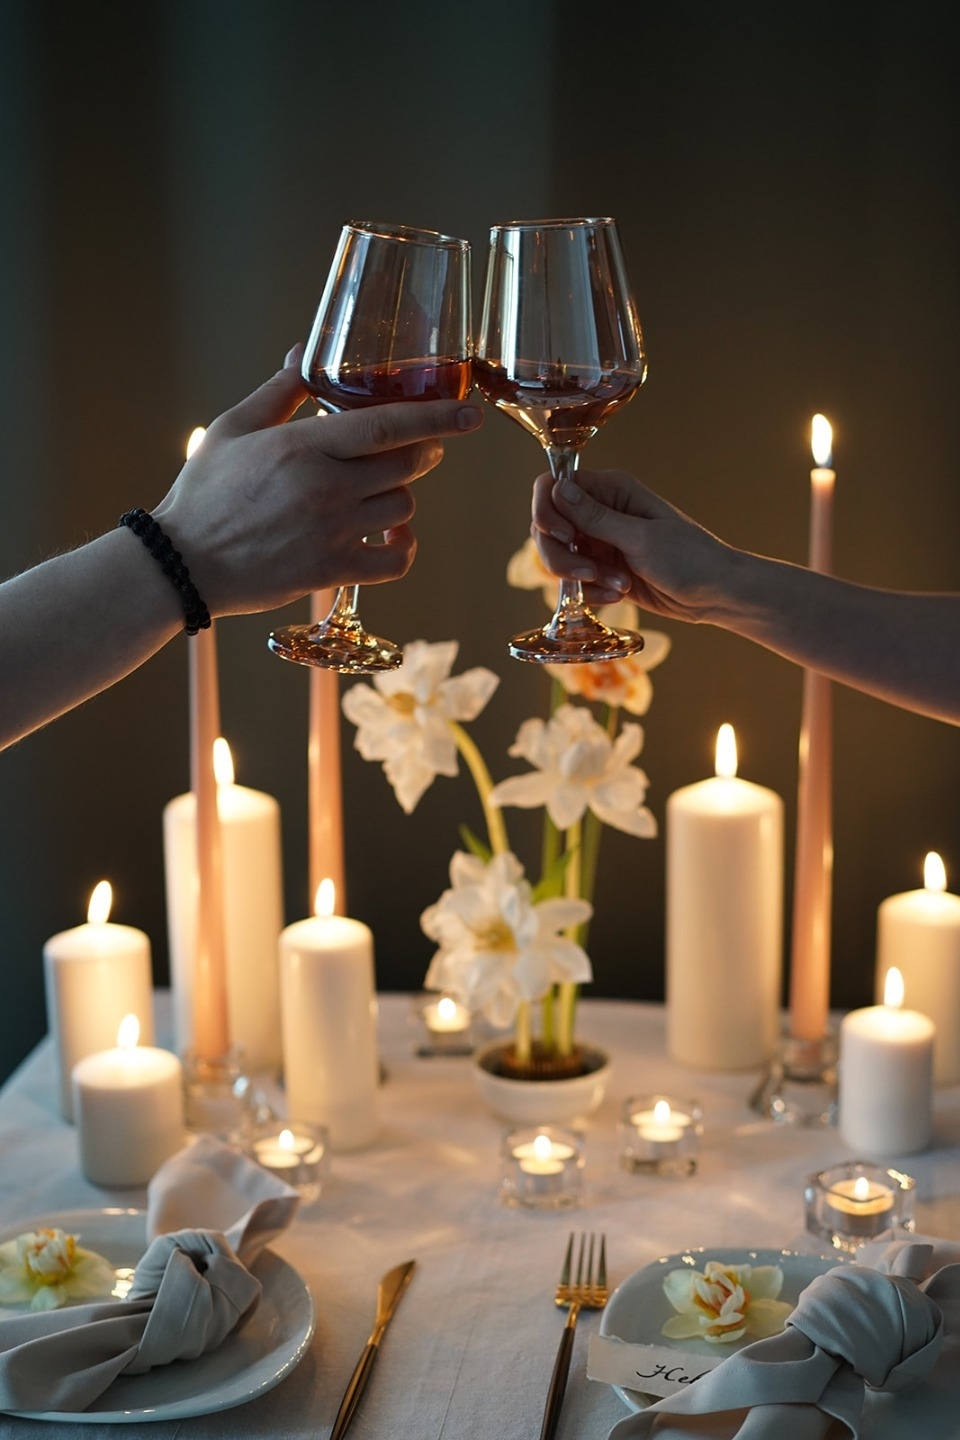 ФОТО ИЗ СТАТЬИ: «Жизнь как продолжительное свидание»: весенняя свадьба для двоих